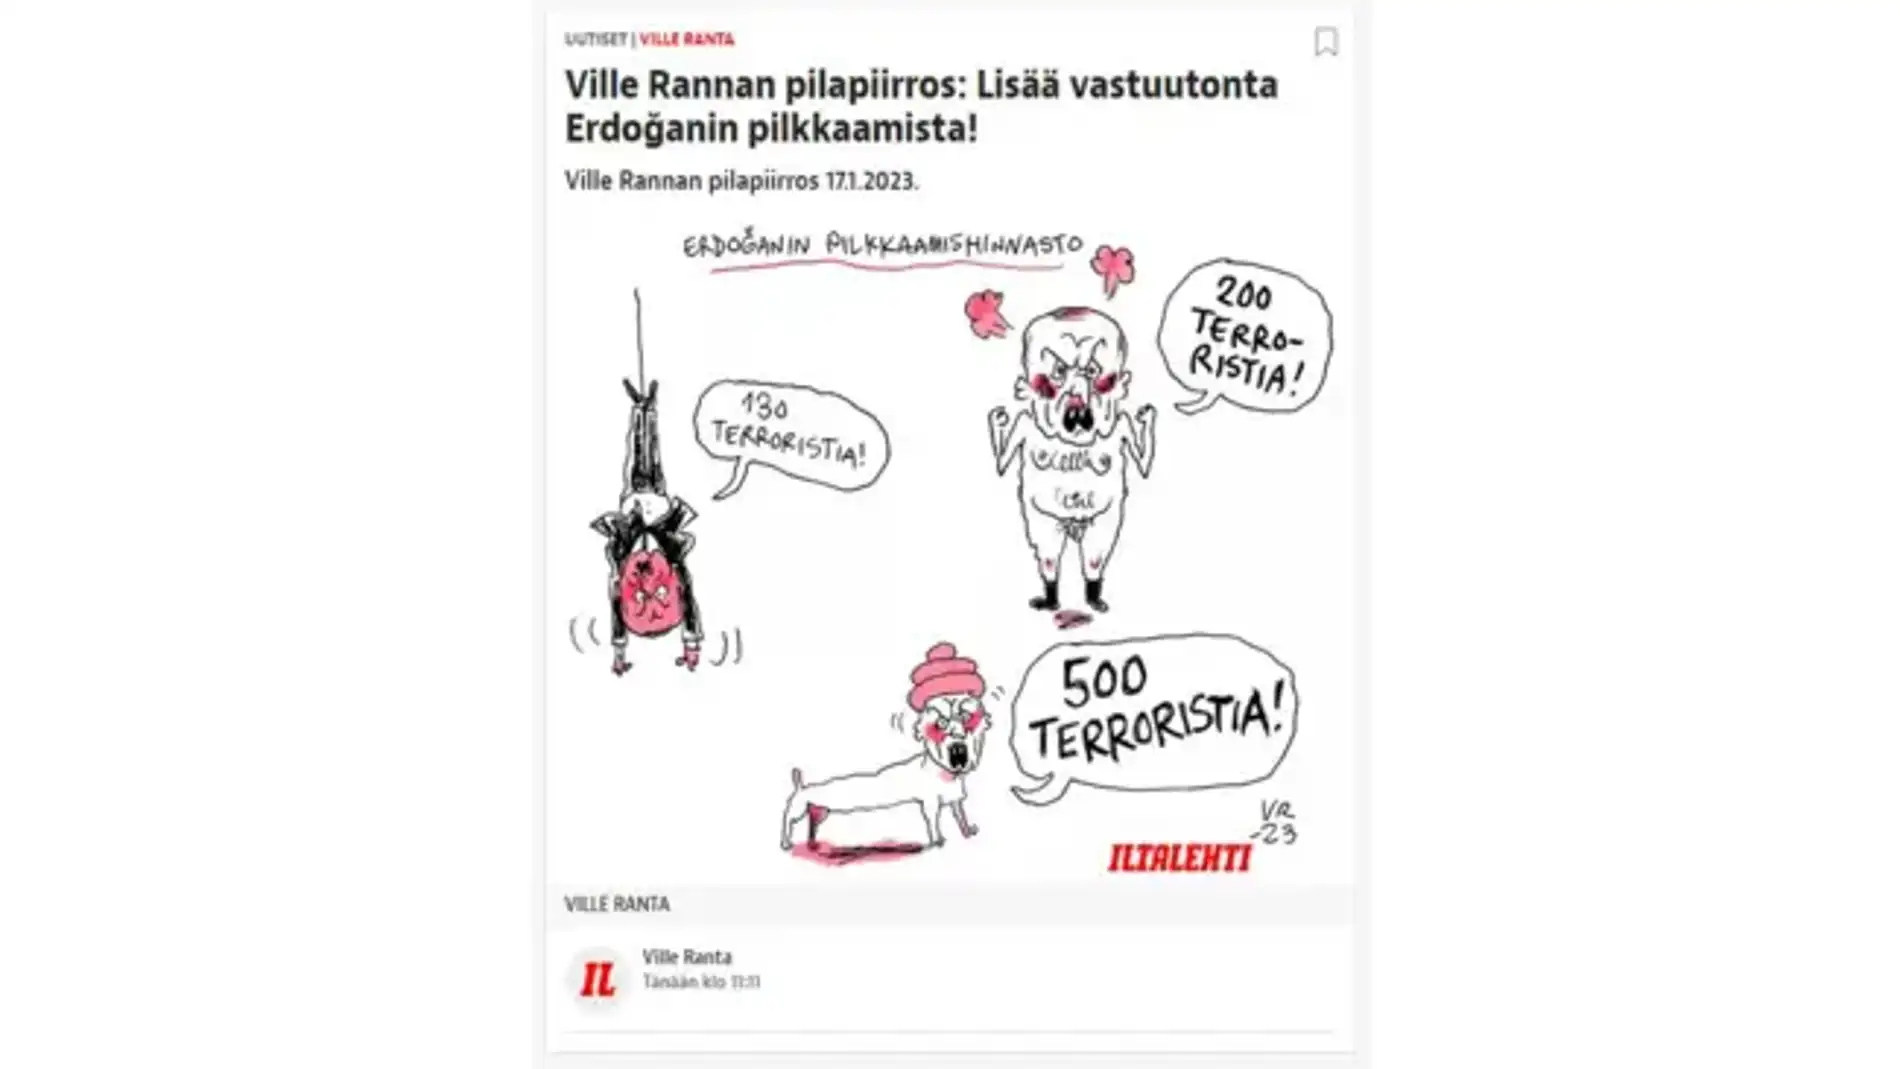 Caricaturas de Erdogan publicadas este martes por el diario finlandés “Illtalehti”